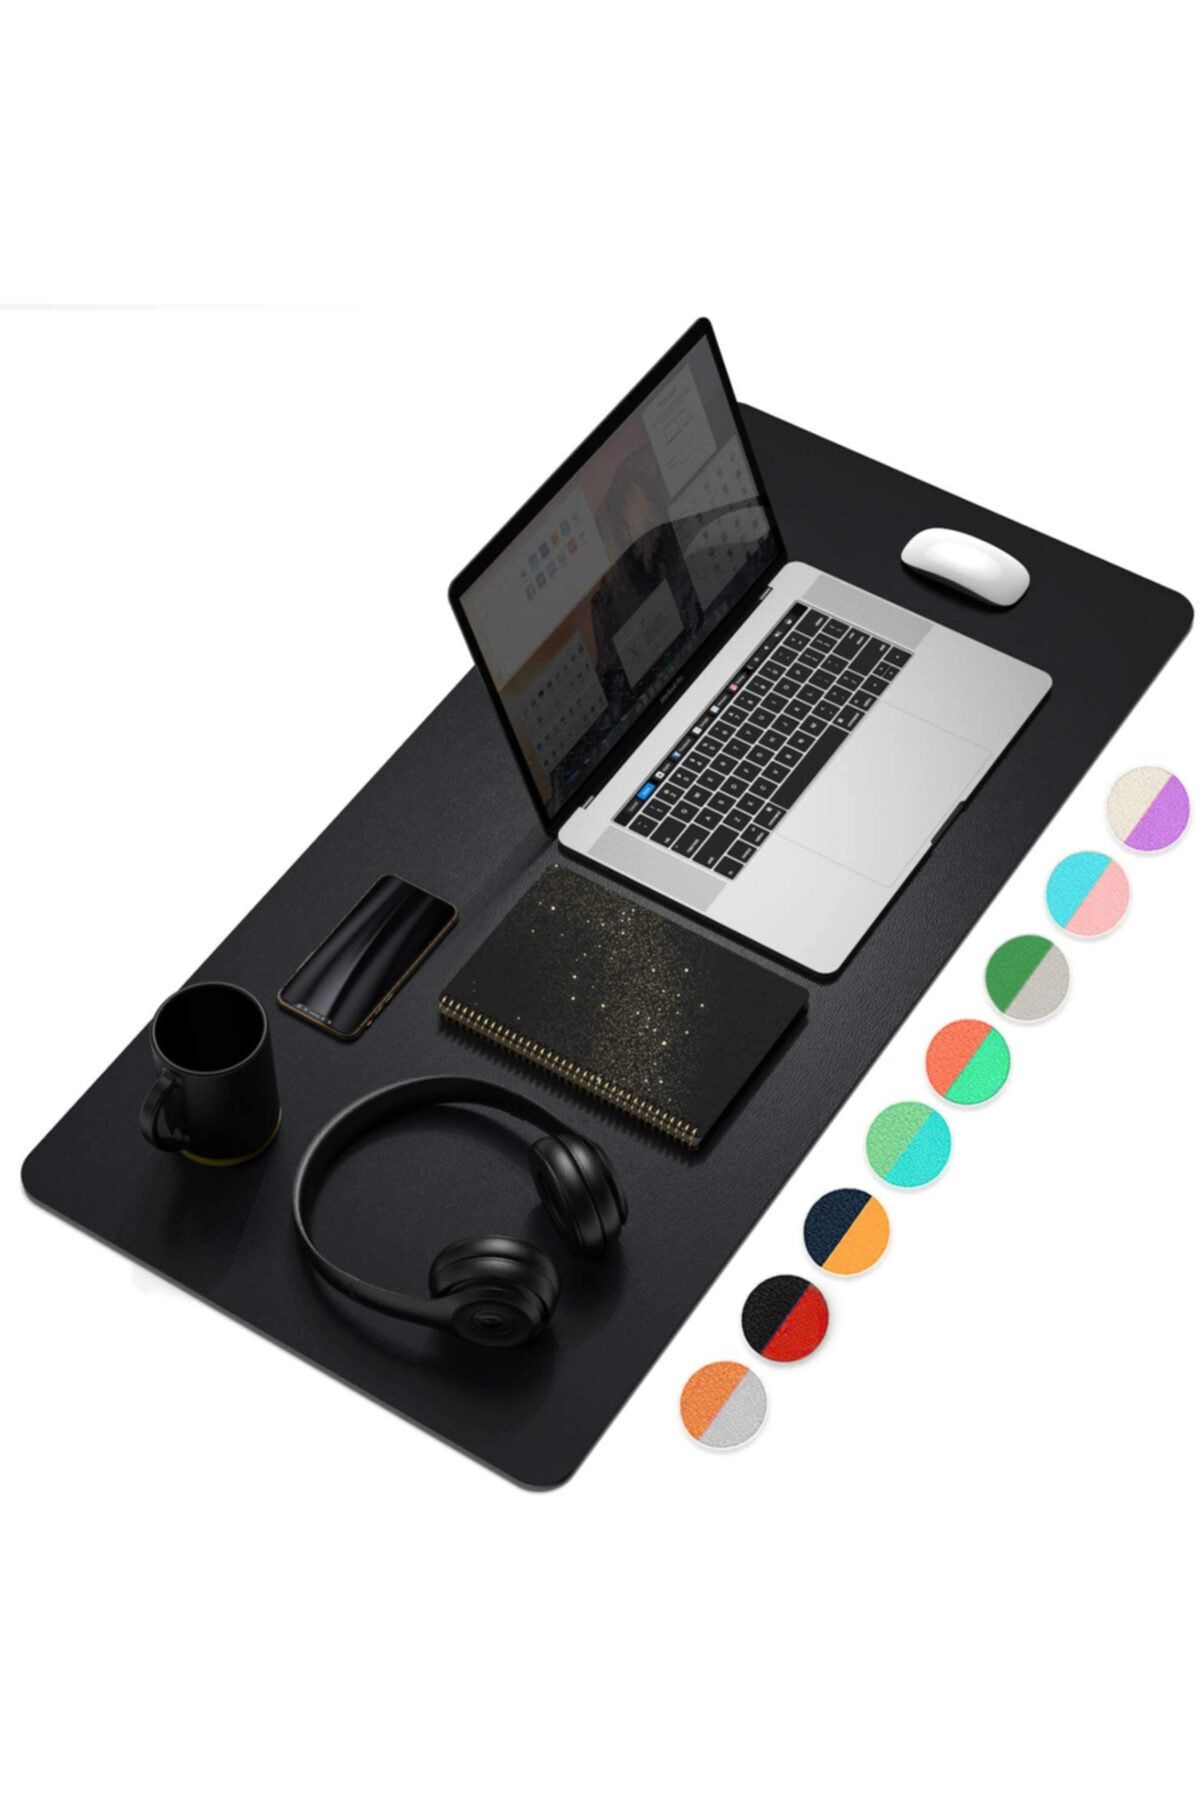 Xrades Çift Renk Deri Mousepad Laptop Bilgisayar Için 80x40 Cm Siyah Ve Gri